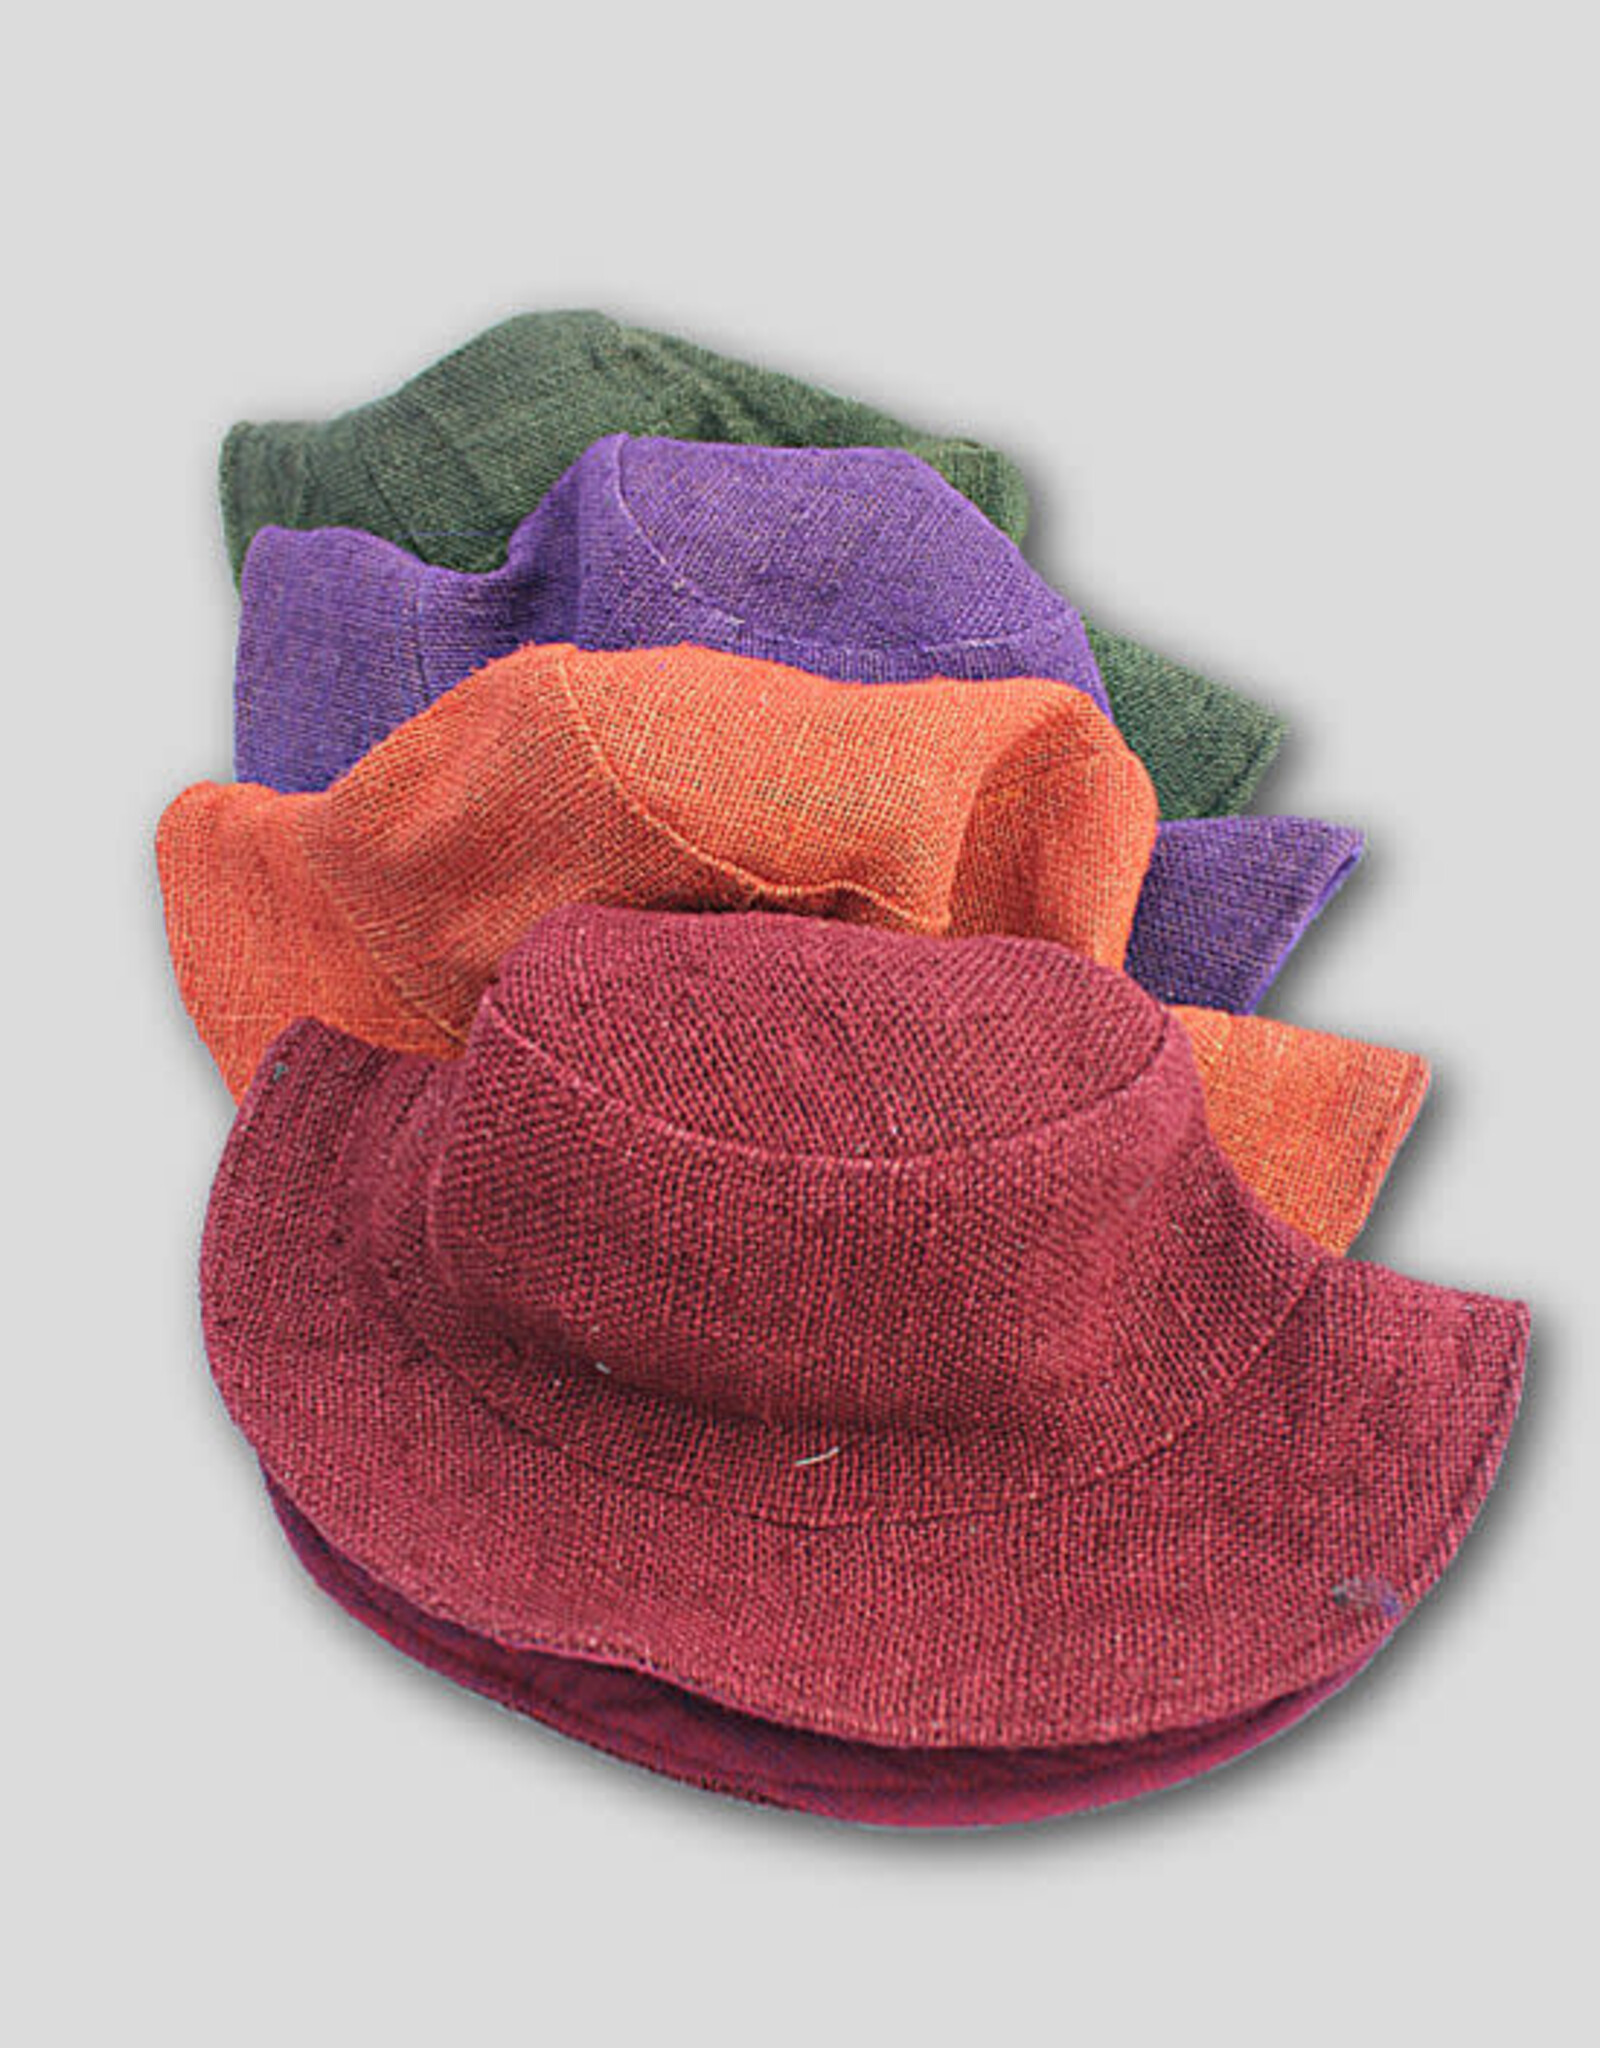 Nepal Hat Colourful Dyed Hemp Brim - Nepal